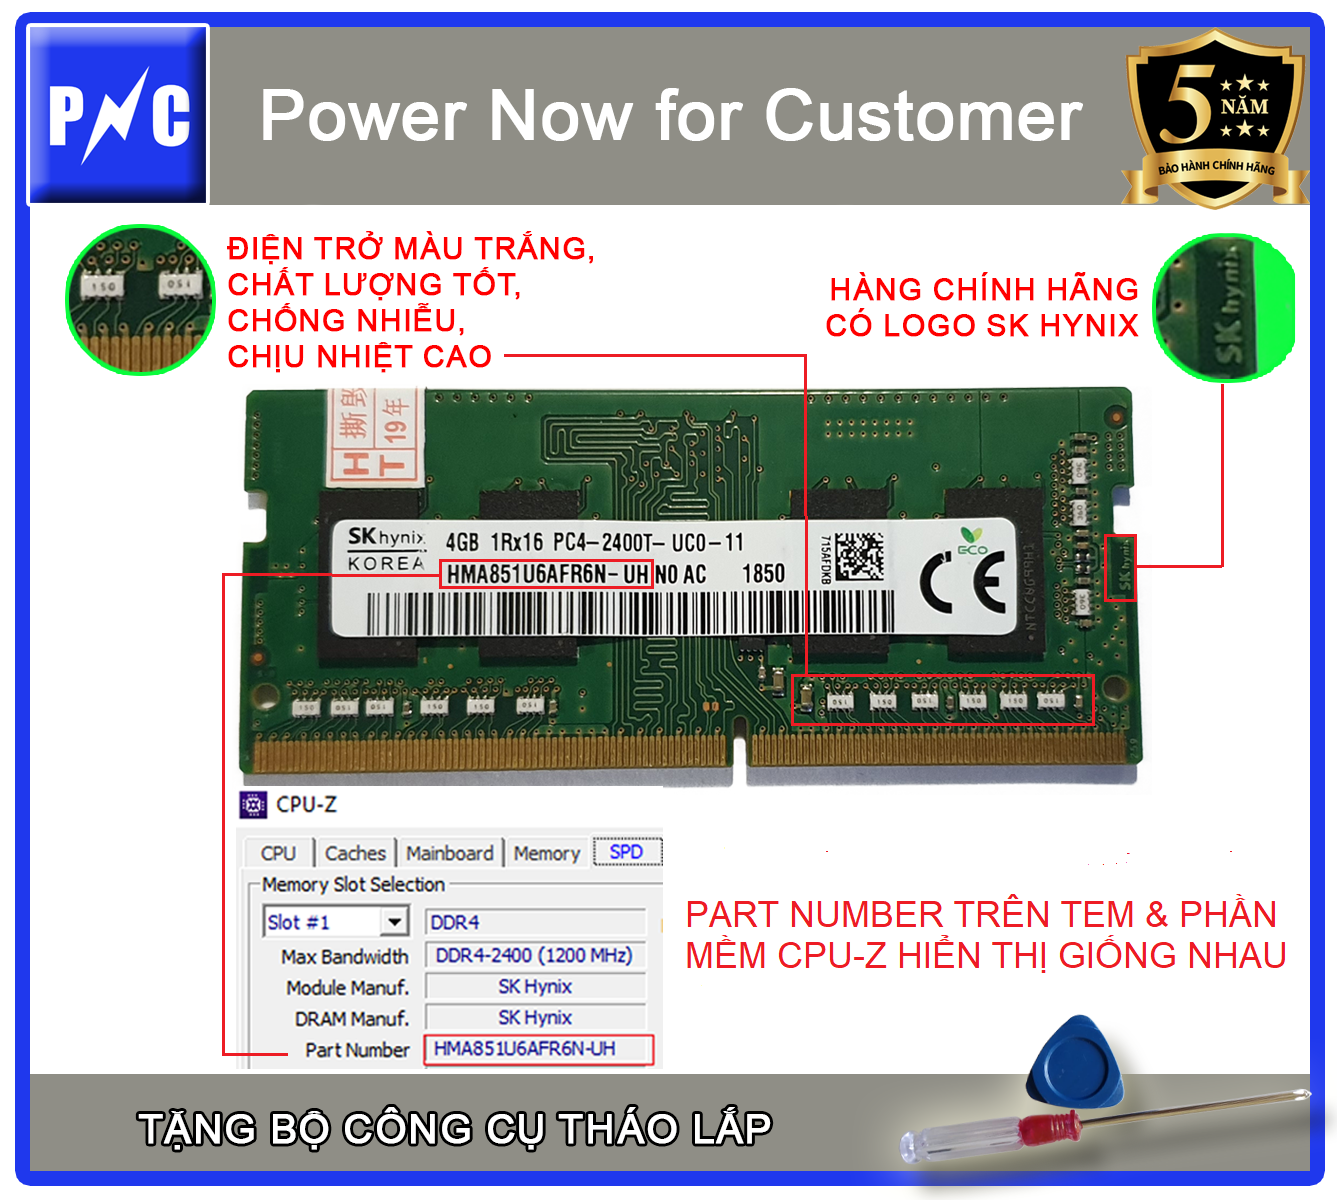 Combo RAM laptop DDR4 2400 4GB SK Hynix + Bộ công cụ tháo lắp, BH 5 năm